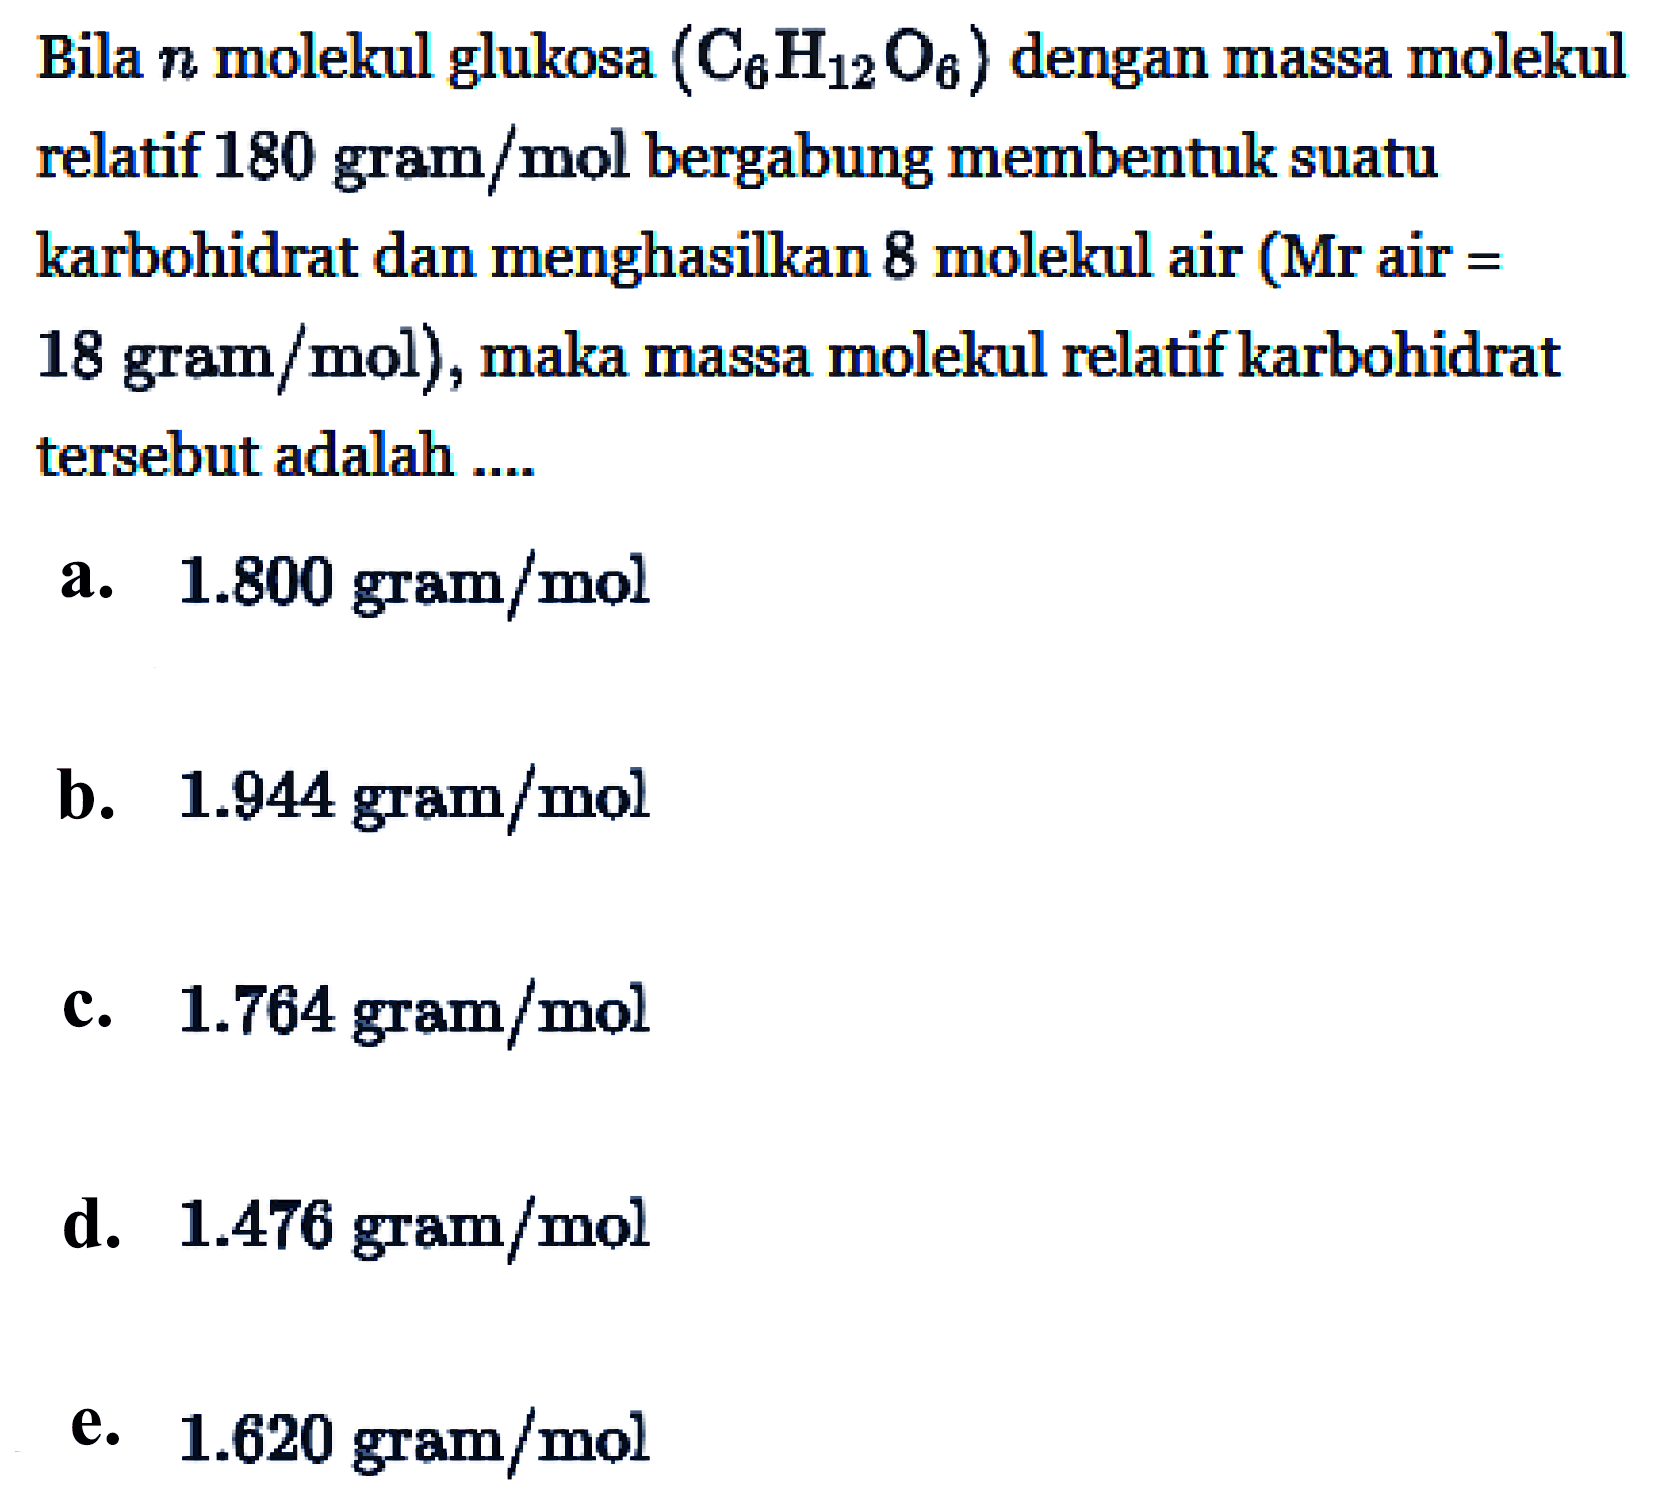 Bila n molekul glukosa (C6H12O6) dengan massa molekul relatif 180 gram/mol bergabung membentuk suatu karbohidrat dan menghasilkan 8 molekul air (Mr air = 18 gram/mol), maka massa molekul relatif karbohidrat tersebut adalah ....